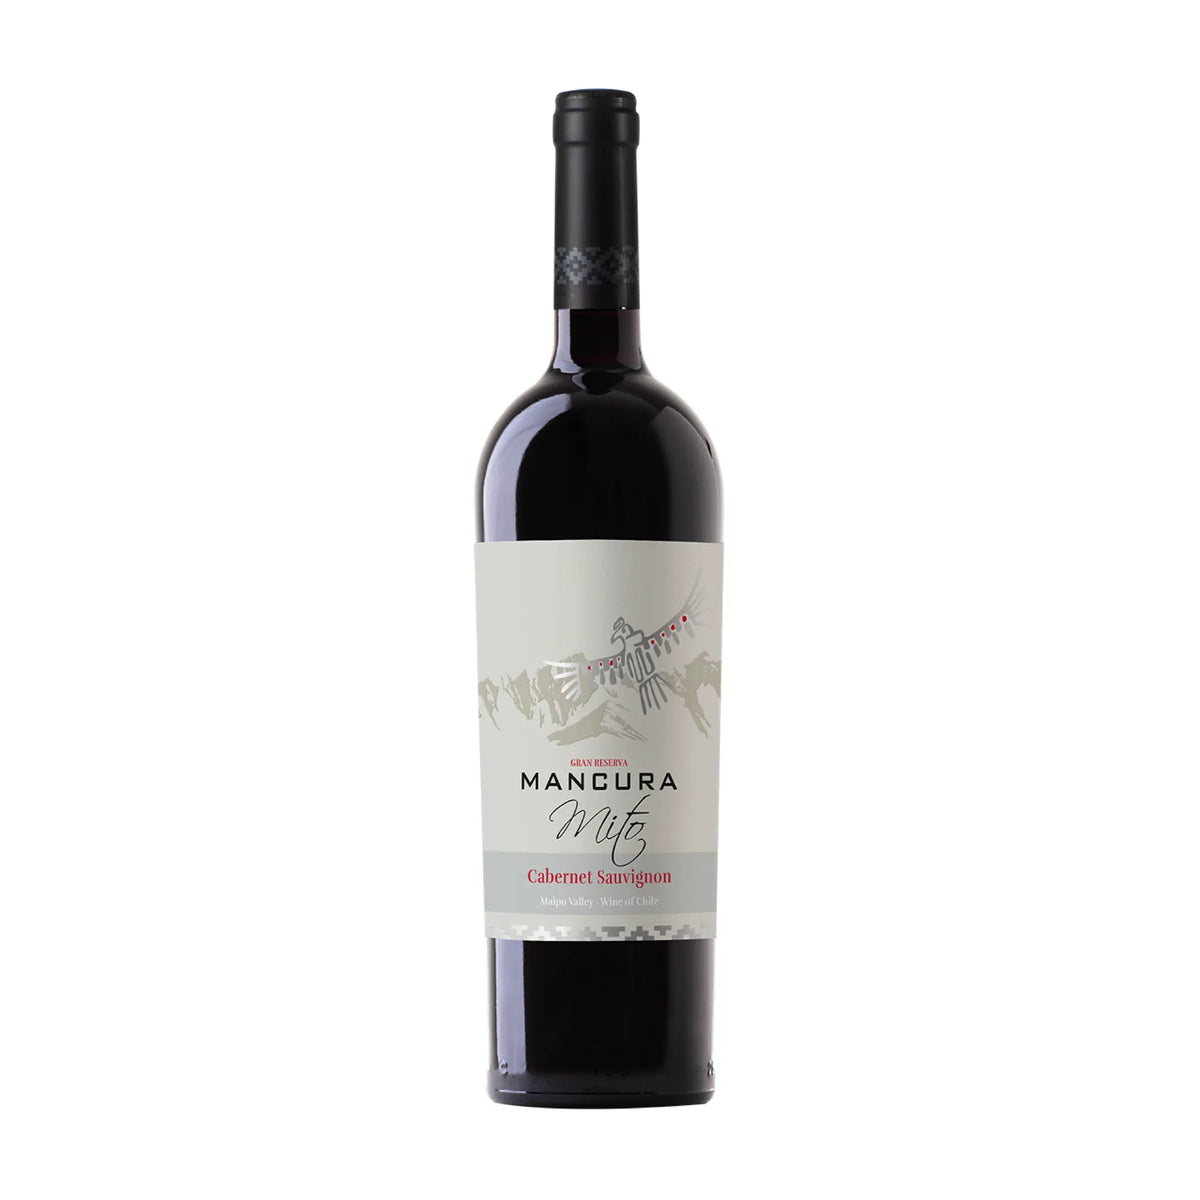 Mancura Wines -Rotwein-Cabernet Sauvignon-Chile-Maule-2018 MANCURA mito GRAN RESERVA Cabernet Sauvignon-WINECOM